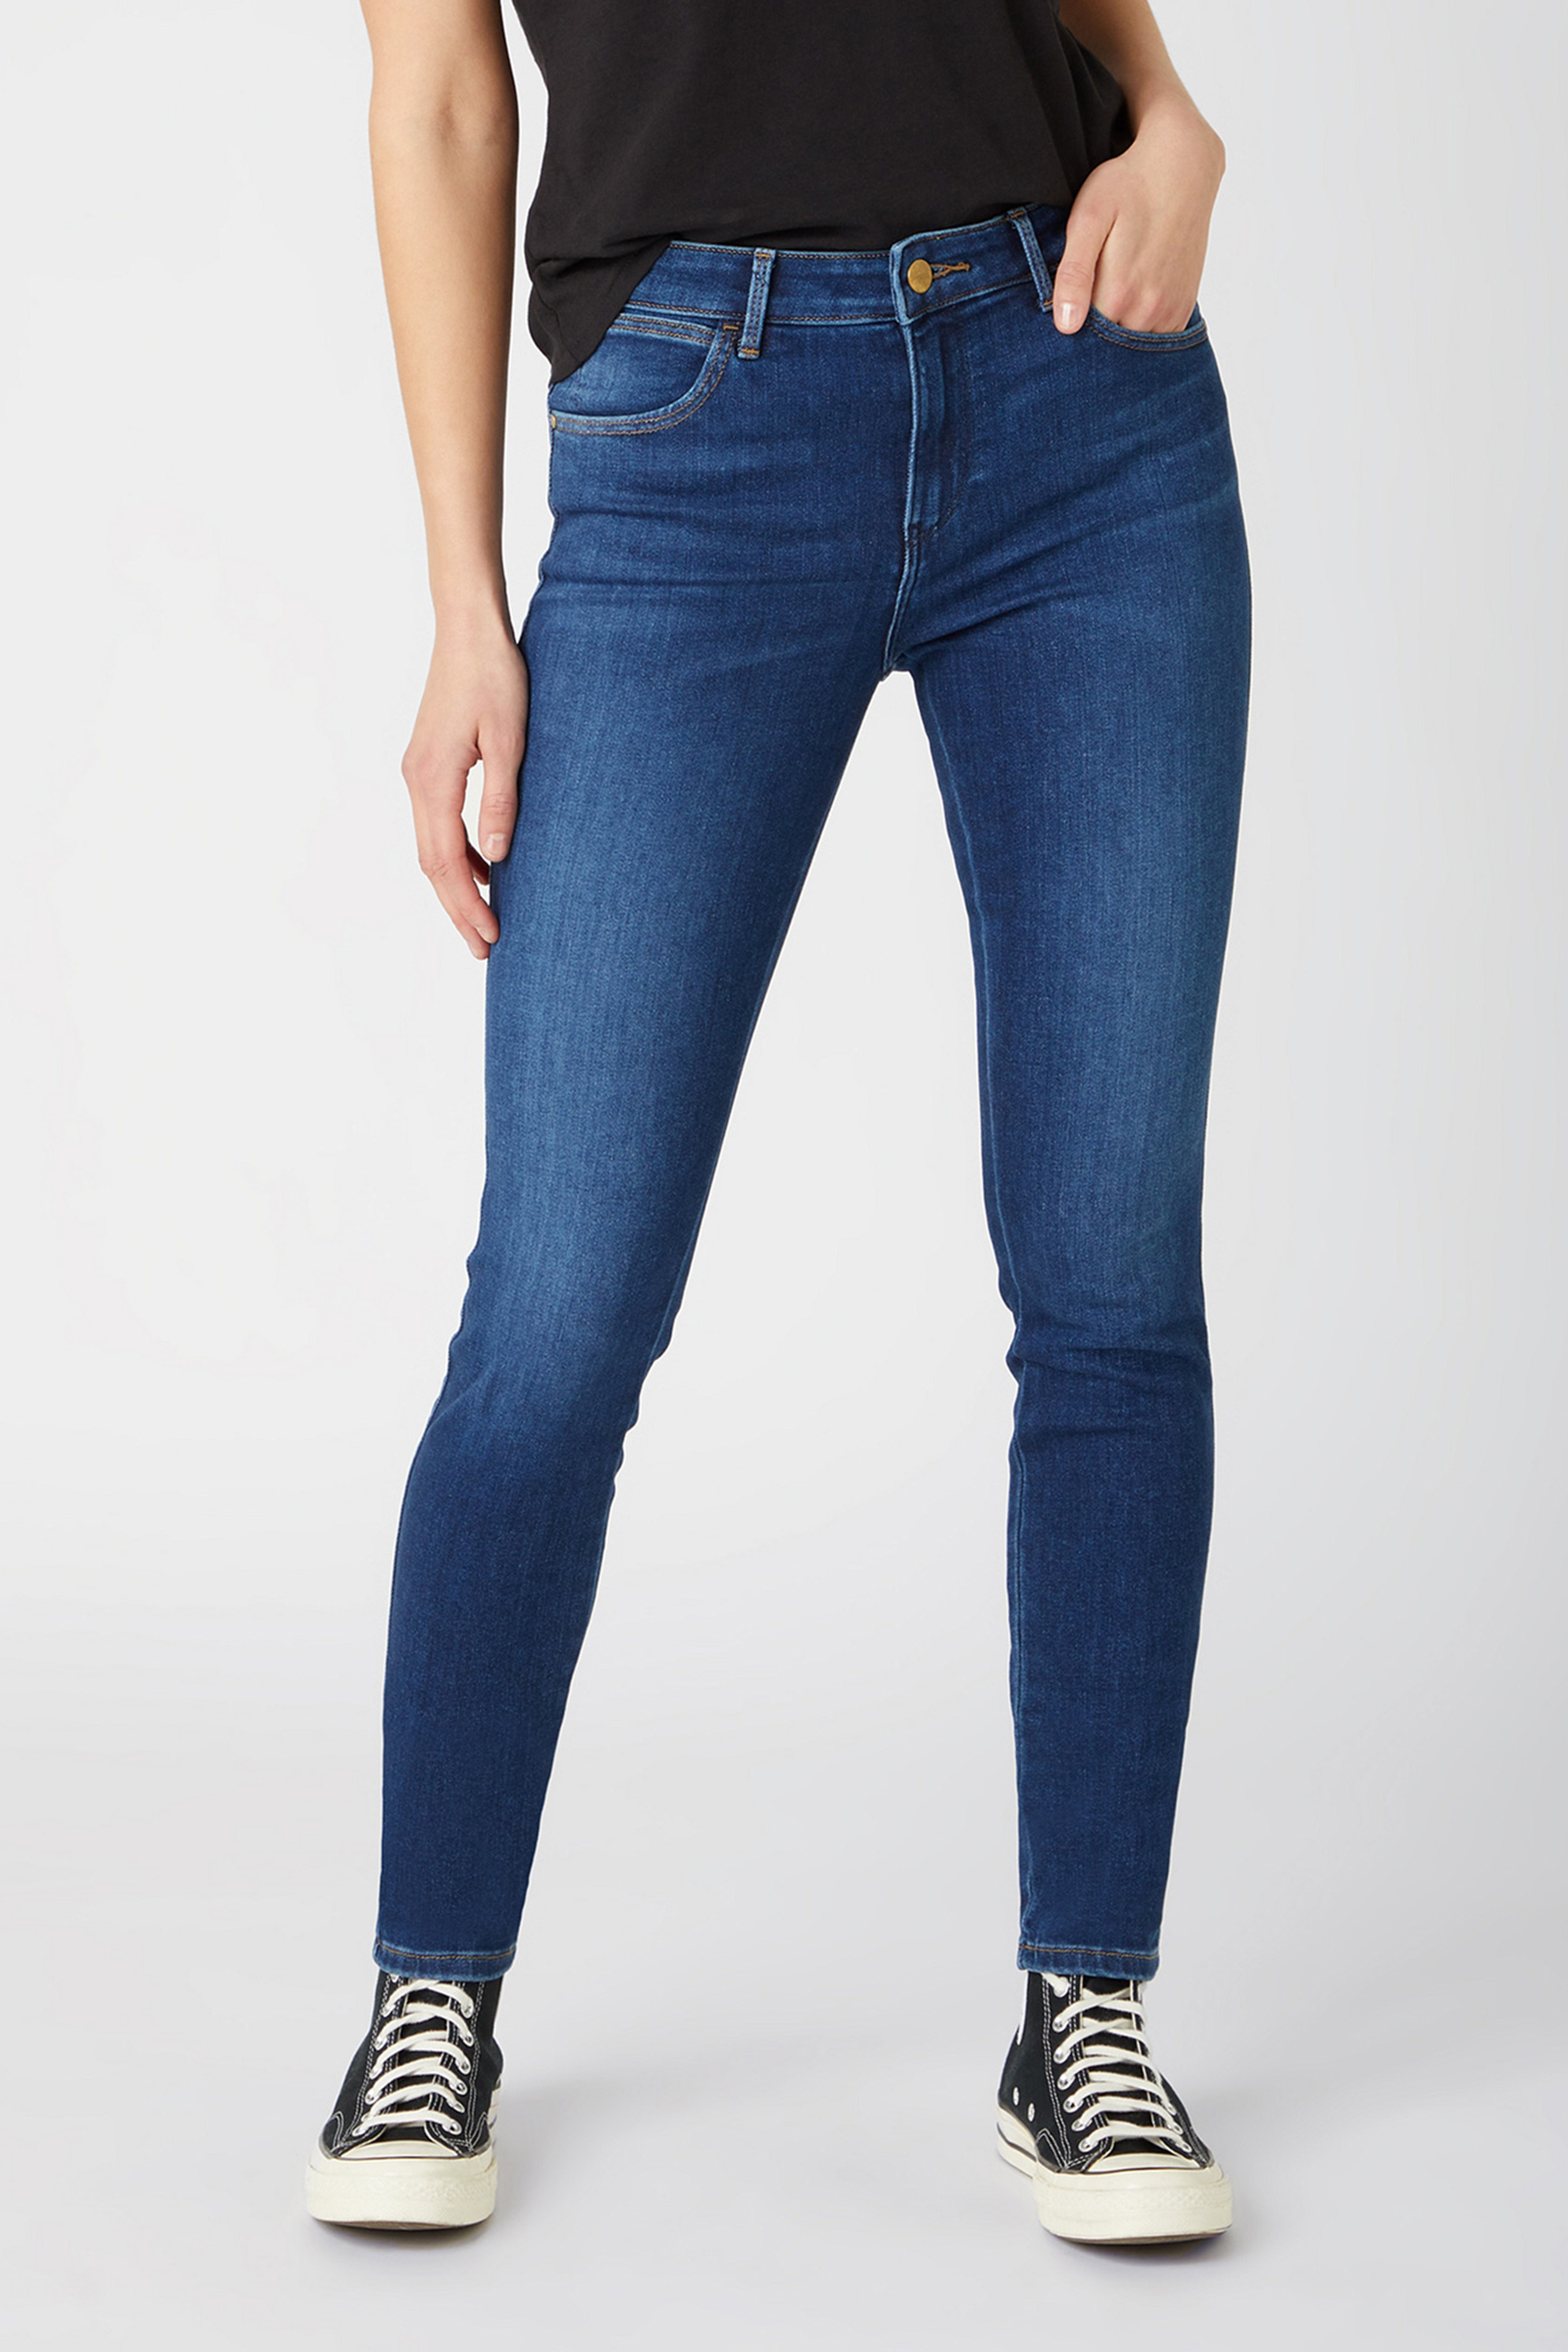 WRANGLER Damen Jeans - "Skinny Authentic love" | Tayler